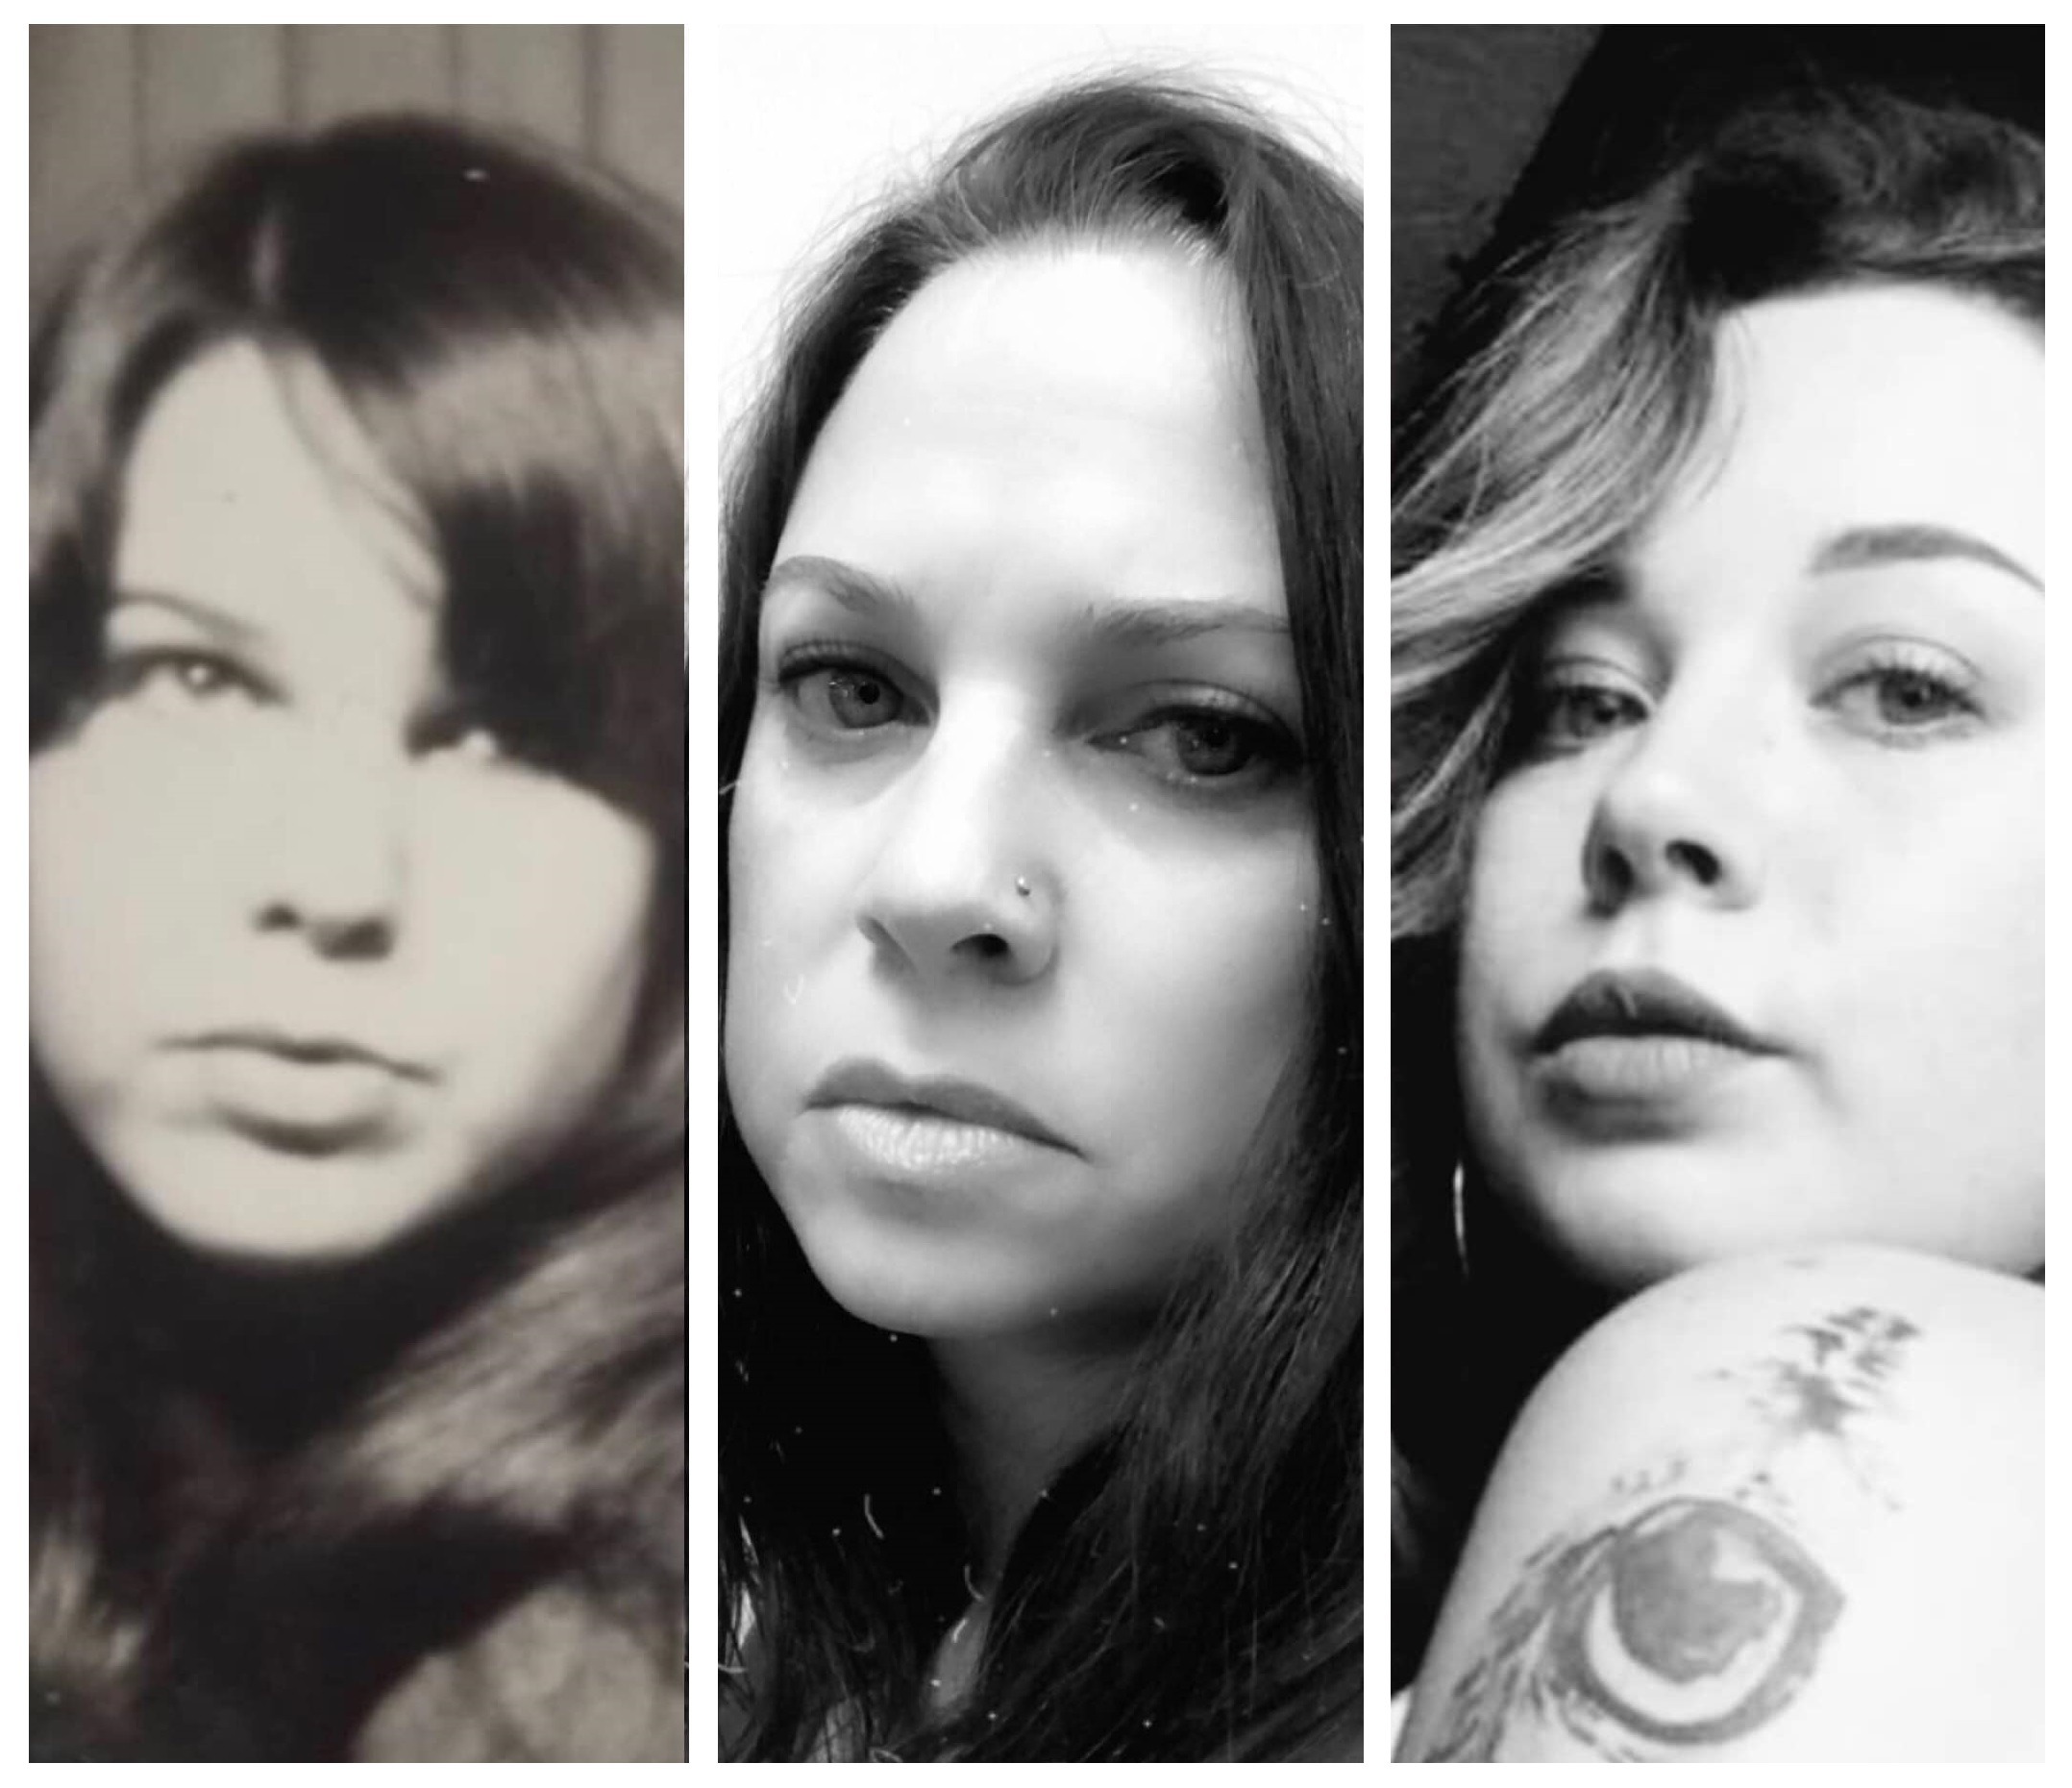 Från vänster, Barbaras mamma Jane Ellen Lockwood vid 21-års ålder, Barbara vid 43 och Barbaras dotter Meghan vid 21-års ålder.